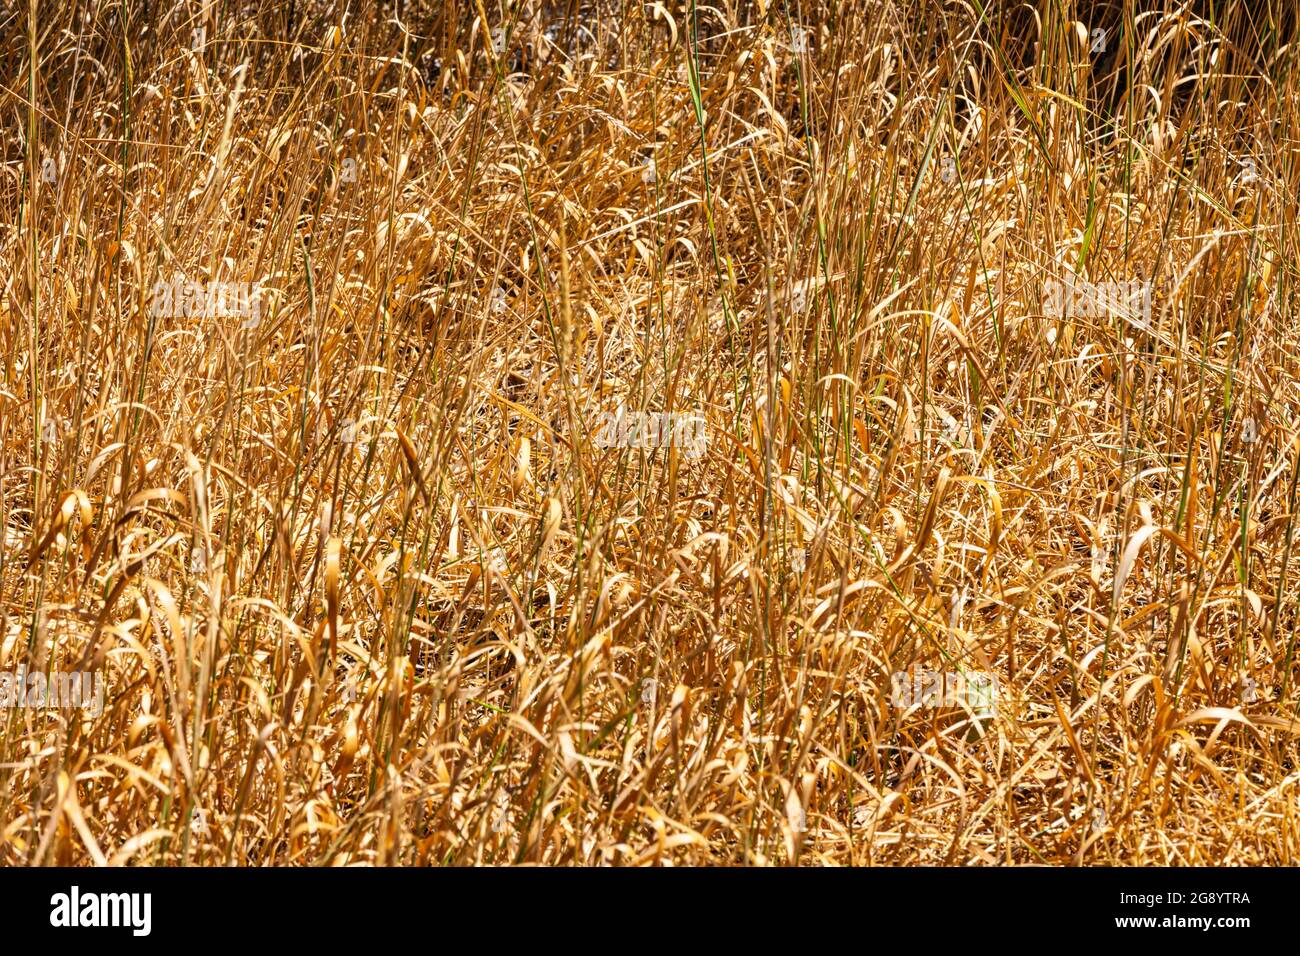 L'erba secca stagnante rappresenta un rischio di incendio durante le condizioni di siccità del 2021 a Kamloops British Columbia Canada Foto Stock